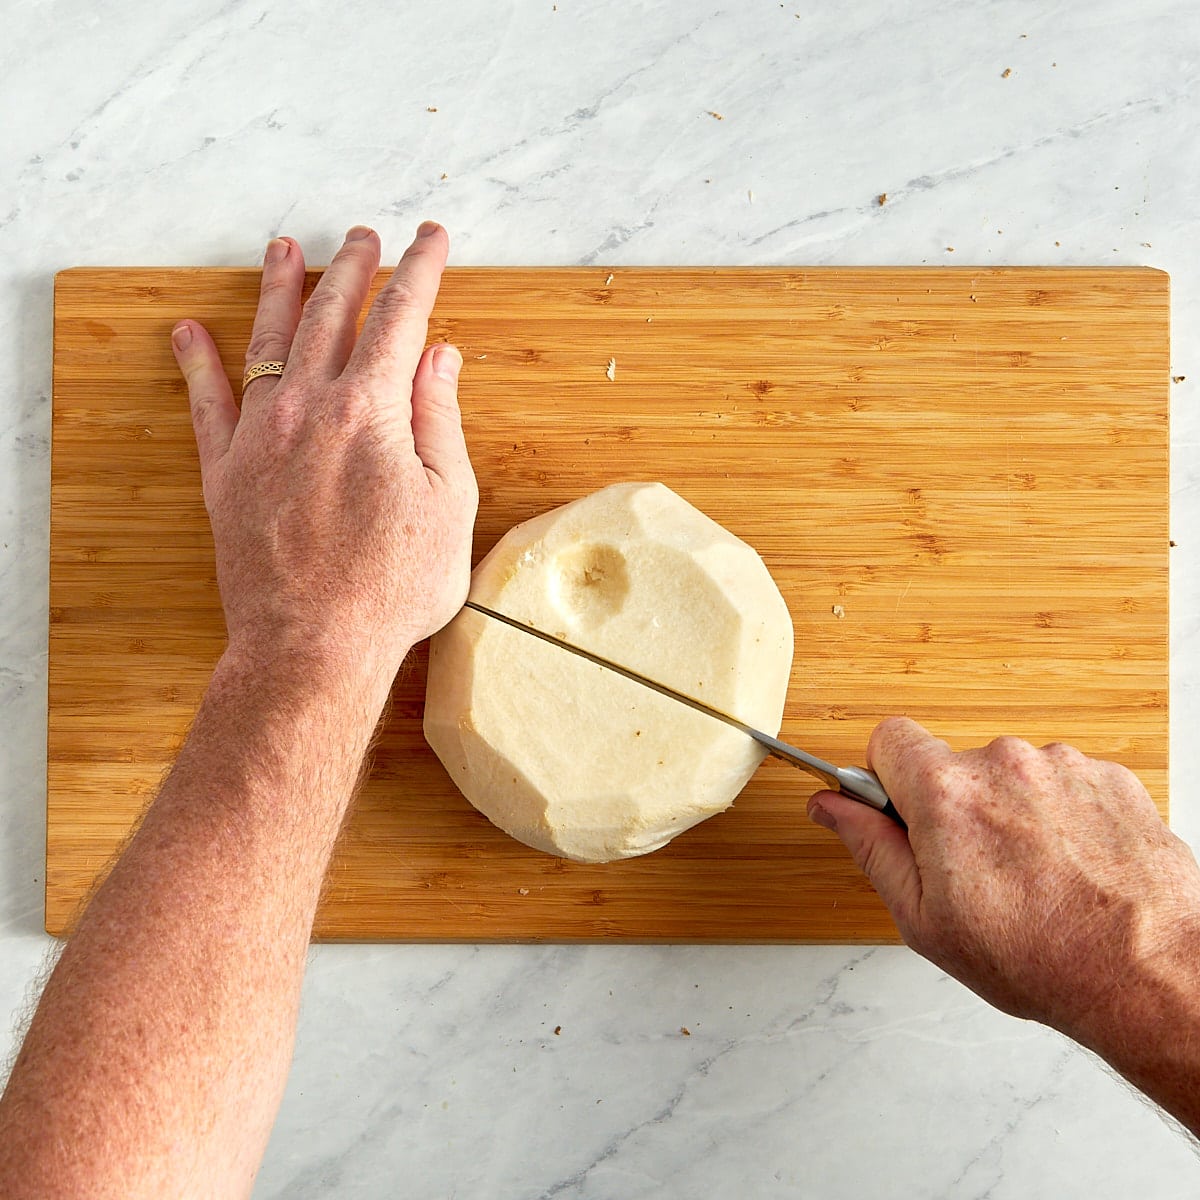 jicama being cut in half on a cutting board.